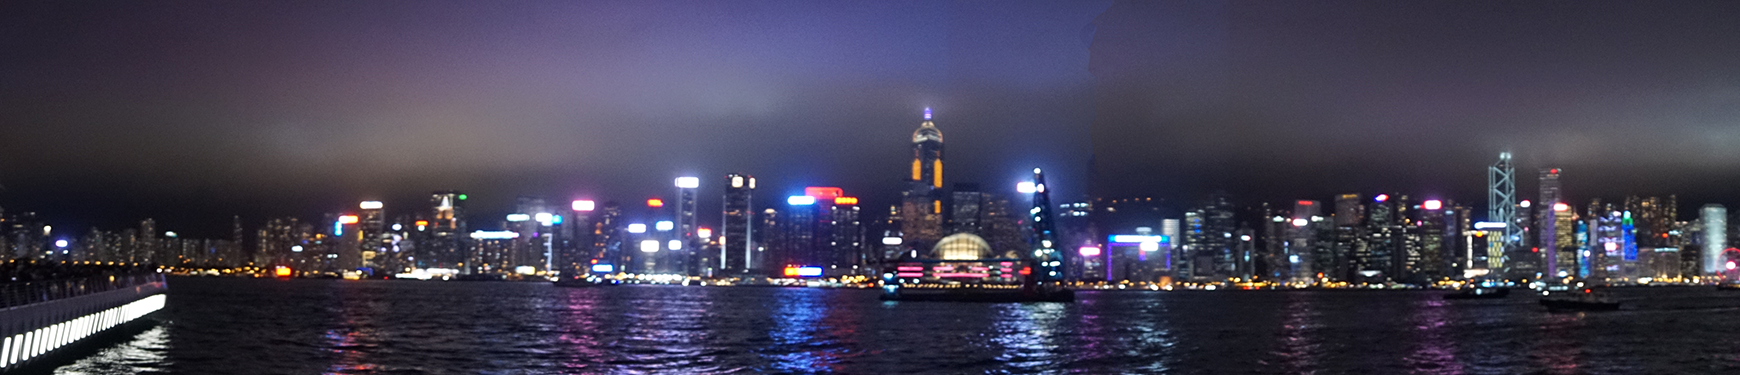 LED照明を多く使っている香港ビクトリア湾の風景